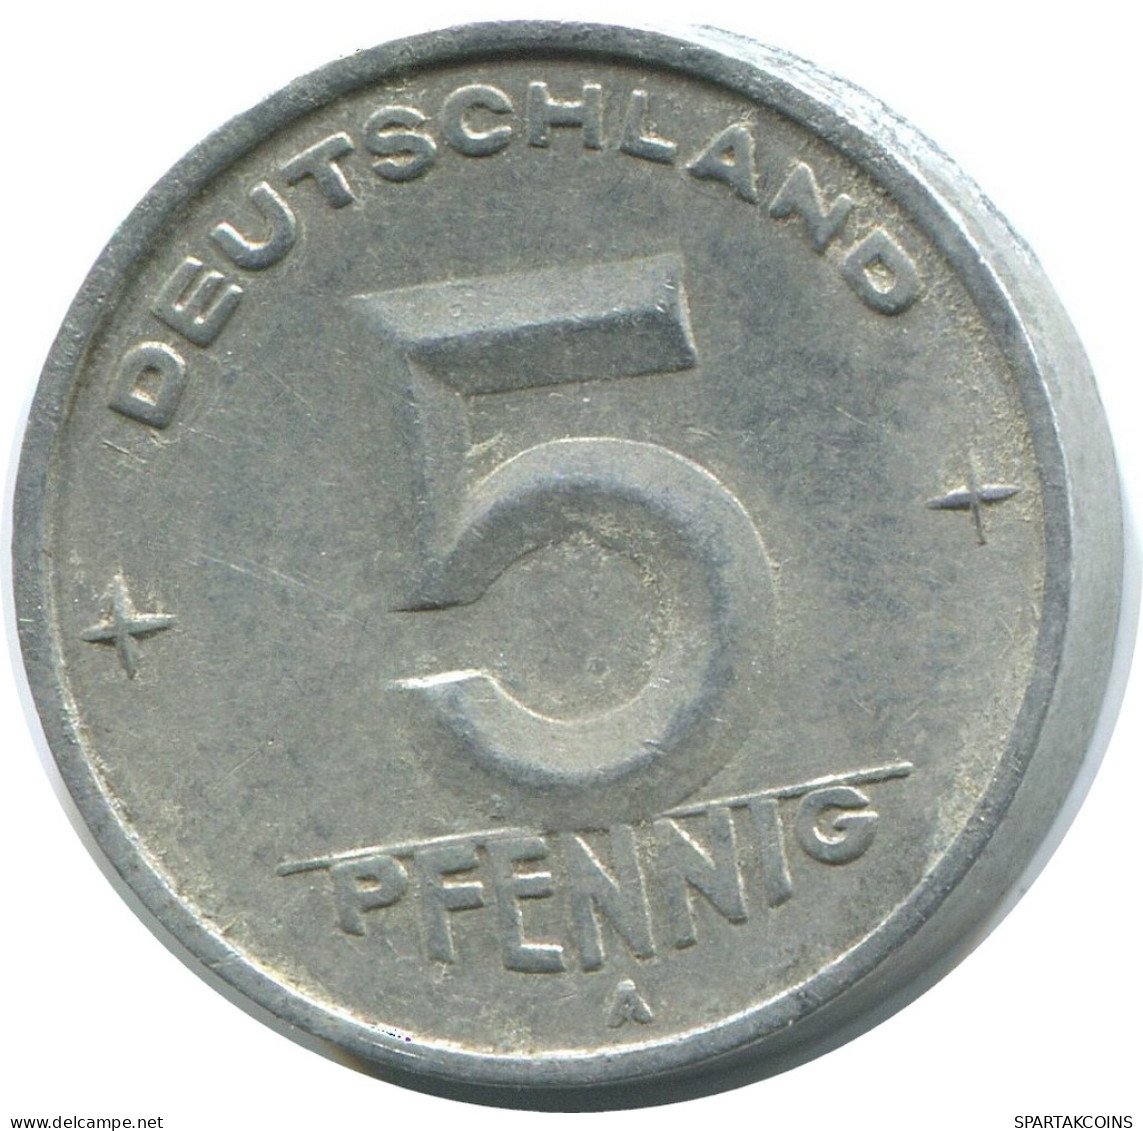 5 PFENNIG 1950 A DDR EAST ALEMANIA Moneda GERMANY #AD782.9.E - 5 Pfennig